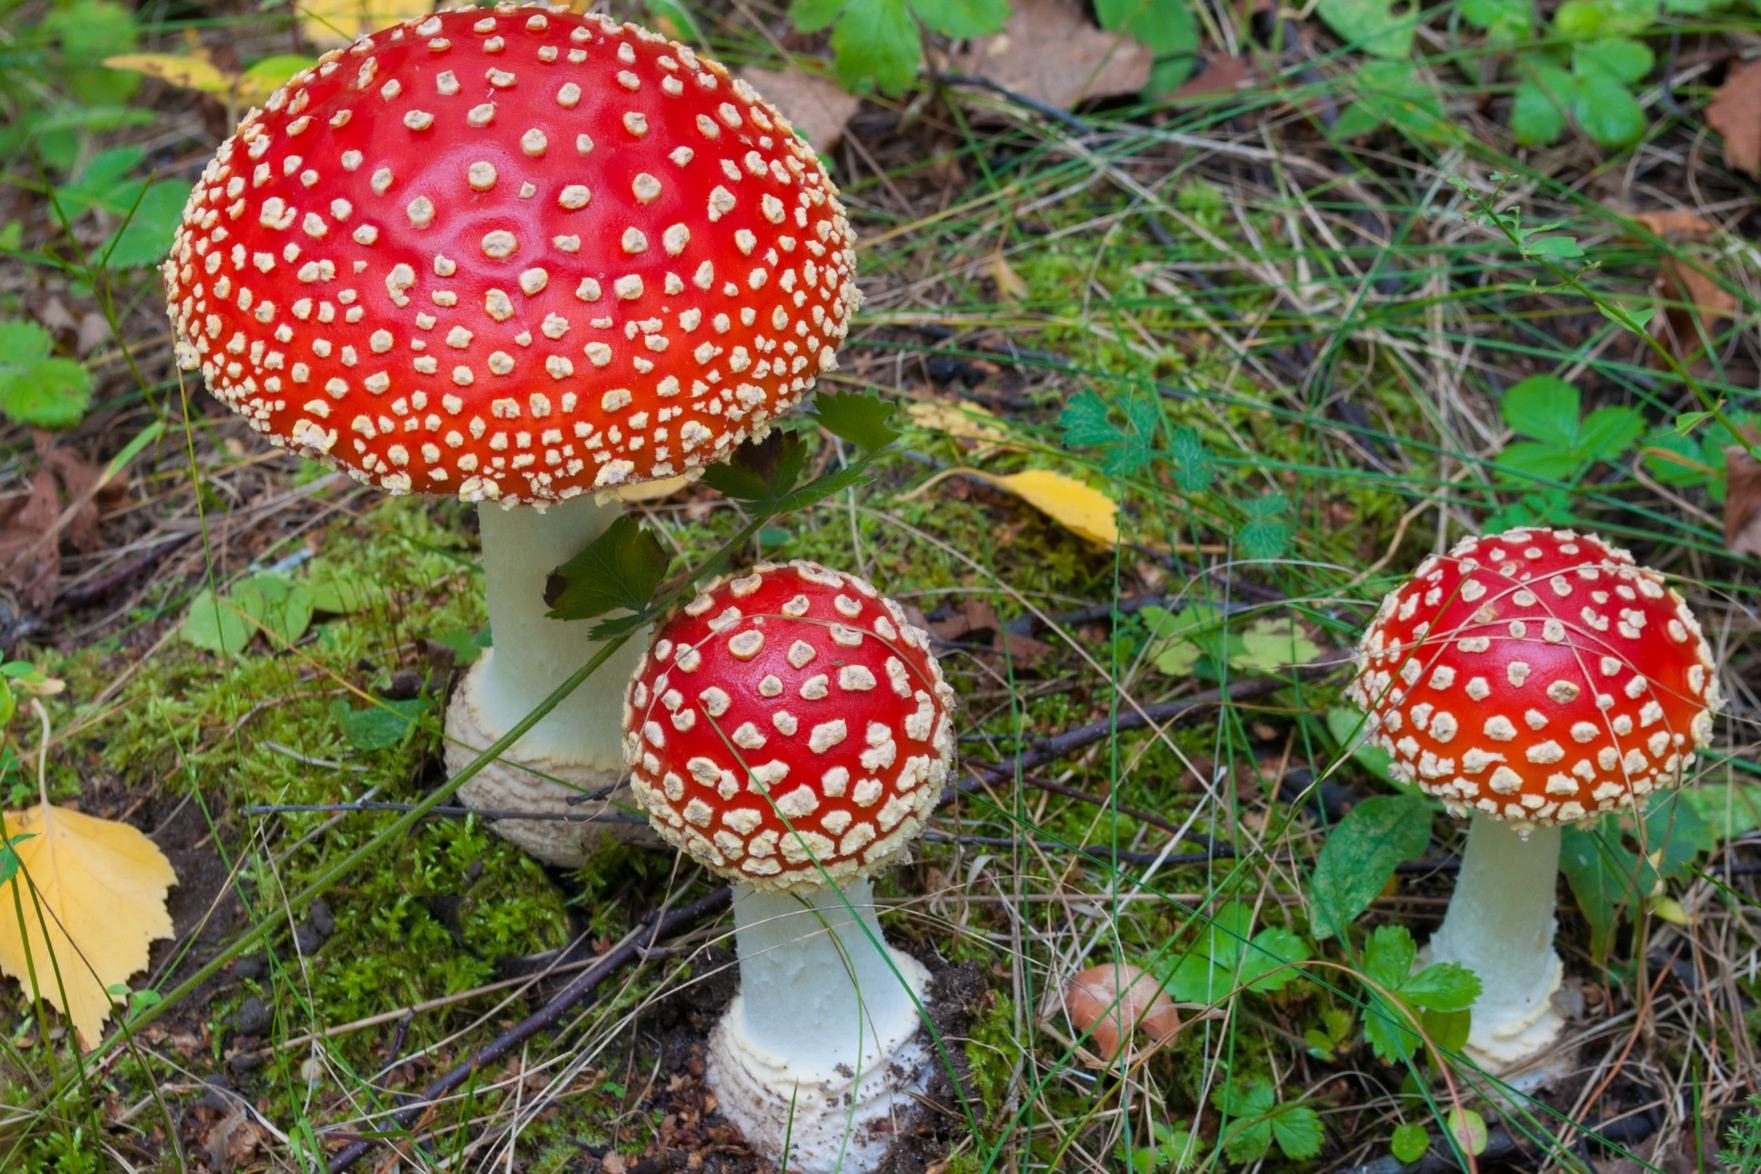 Какие есть опасные грибы